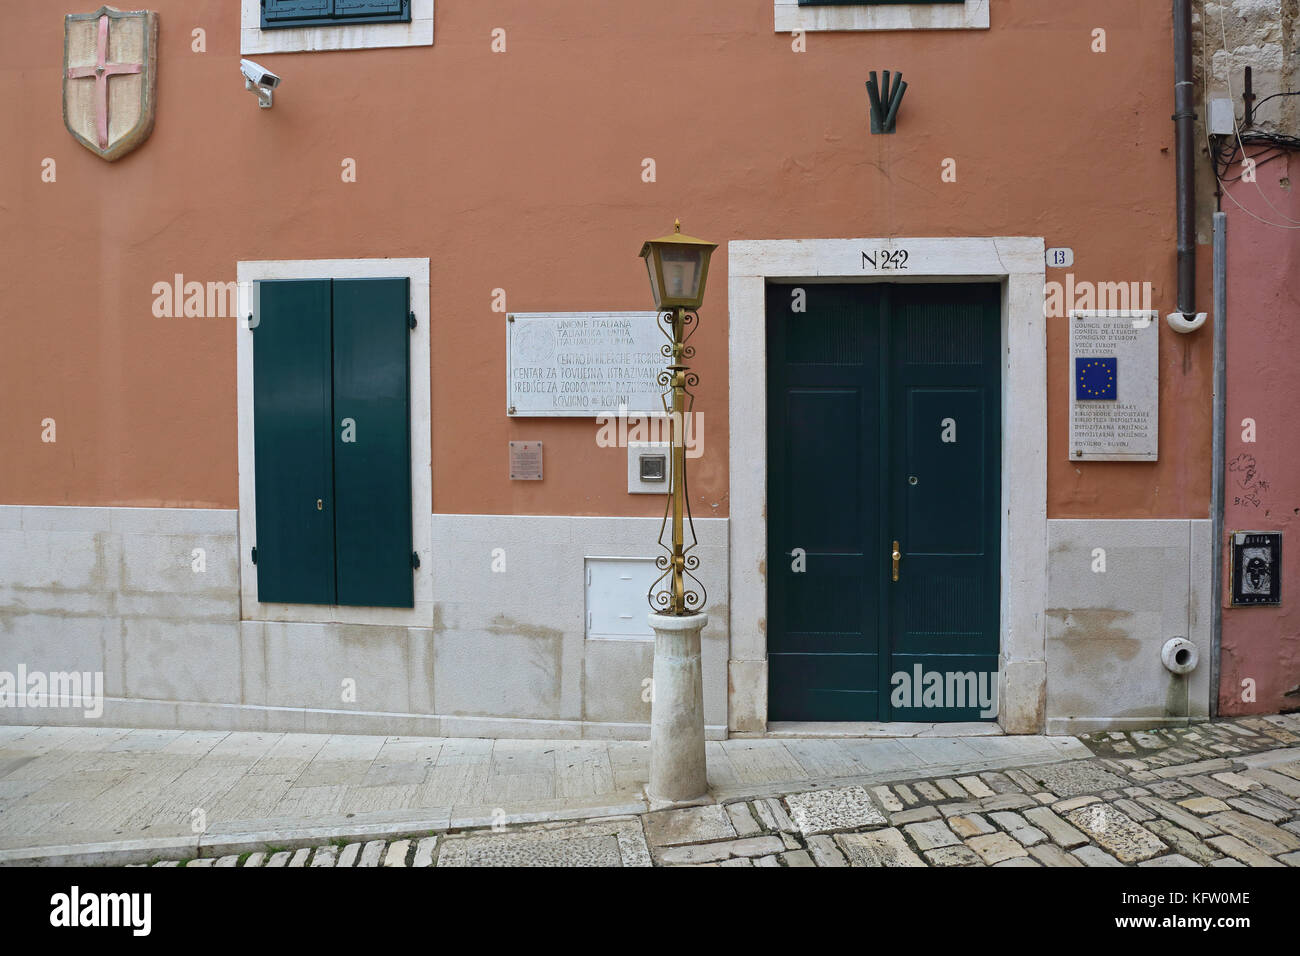 Rovinj, Croatie - 15 octobre : Le Centre de recherches historiques de l'union italienne de Rovinj le 15 octobre 2014. Conseil de l'Europe bibliothèque dépositaire et gouvernem Banque D'Images